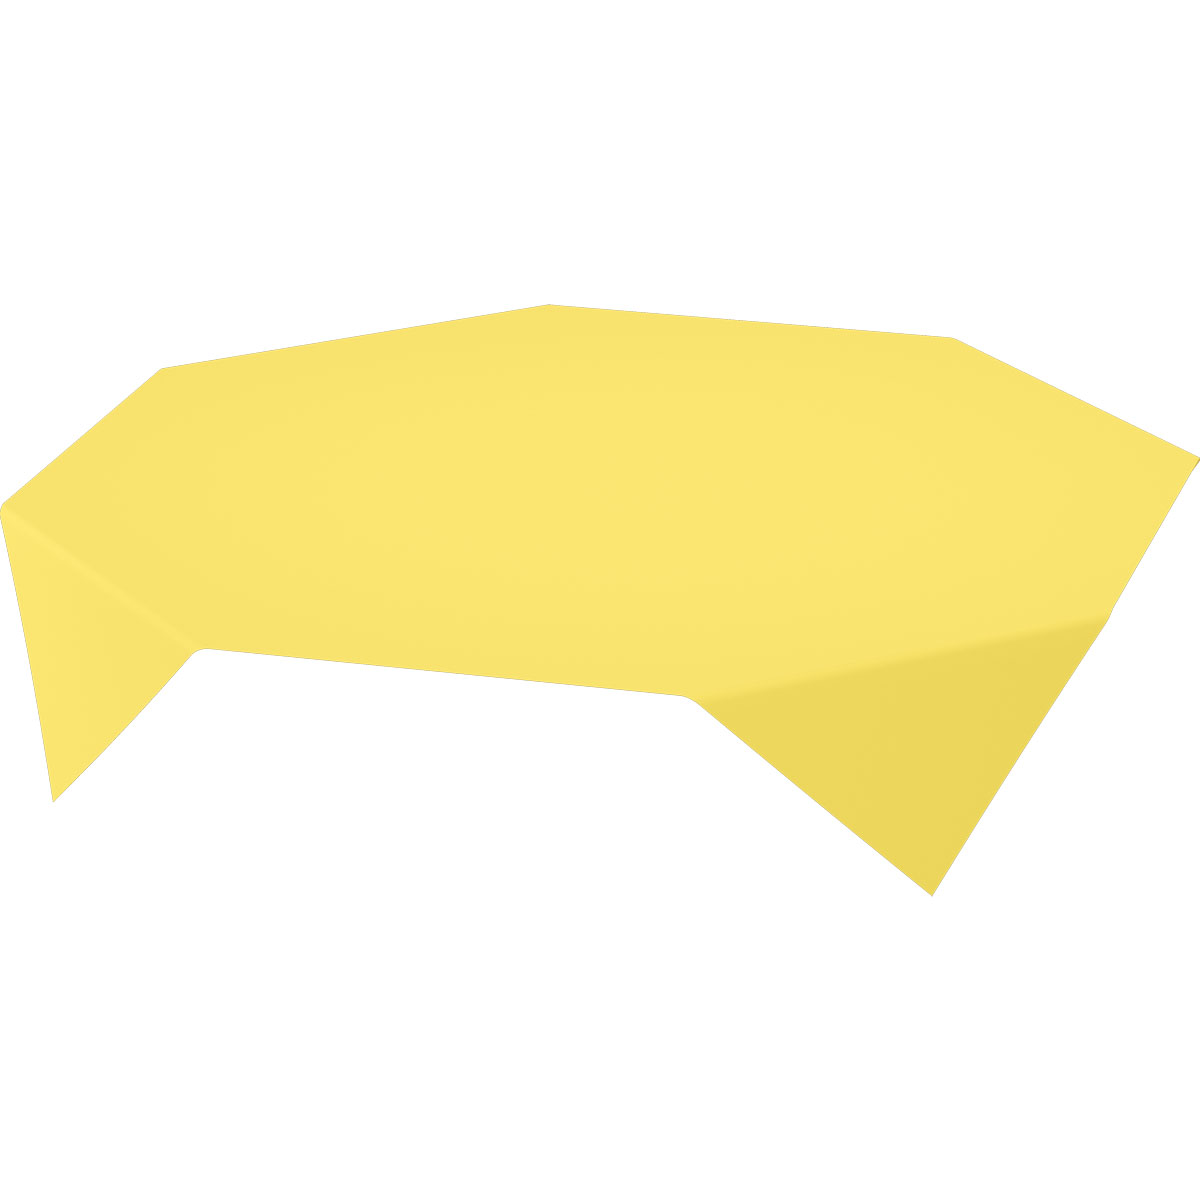 Duni Dunicel-Mitteldecken 84 x 84 cm gelb